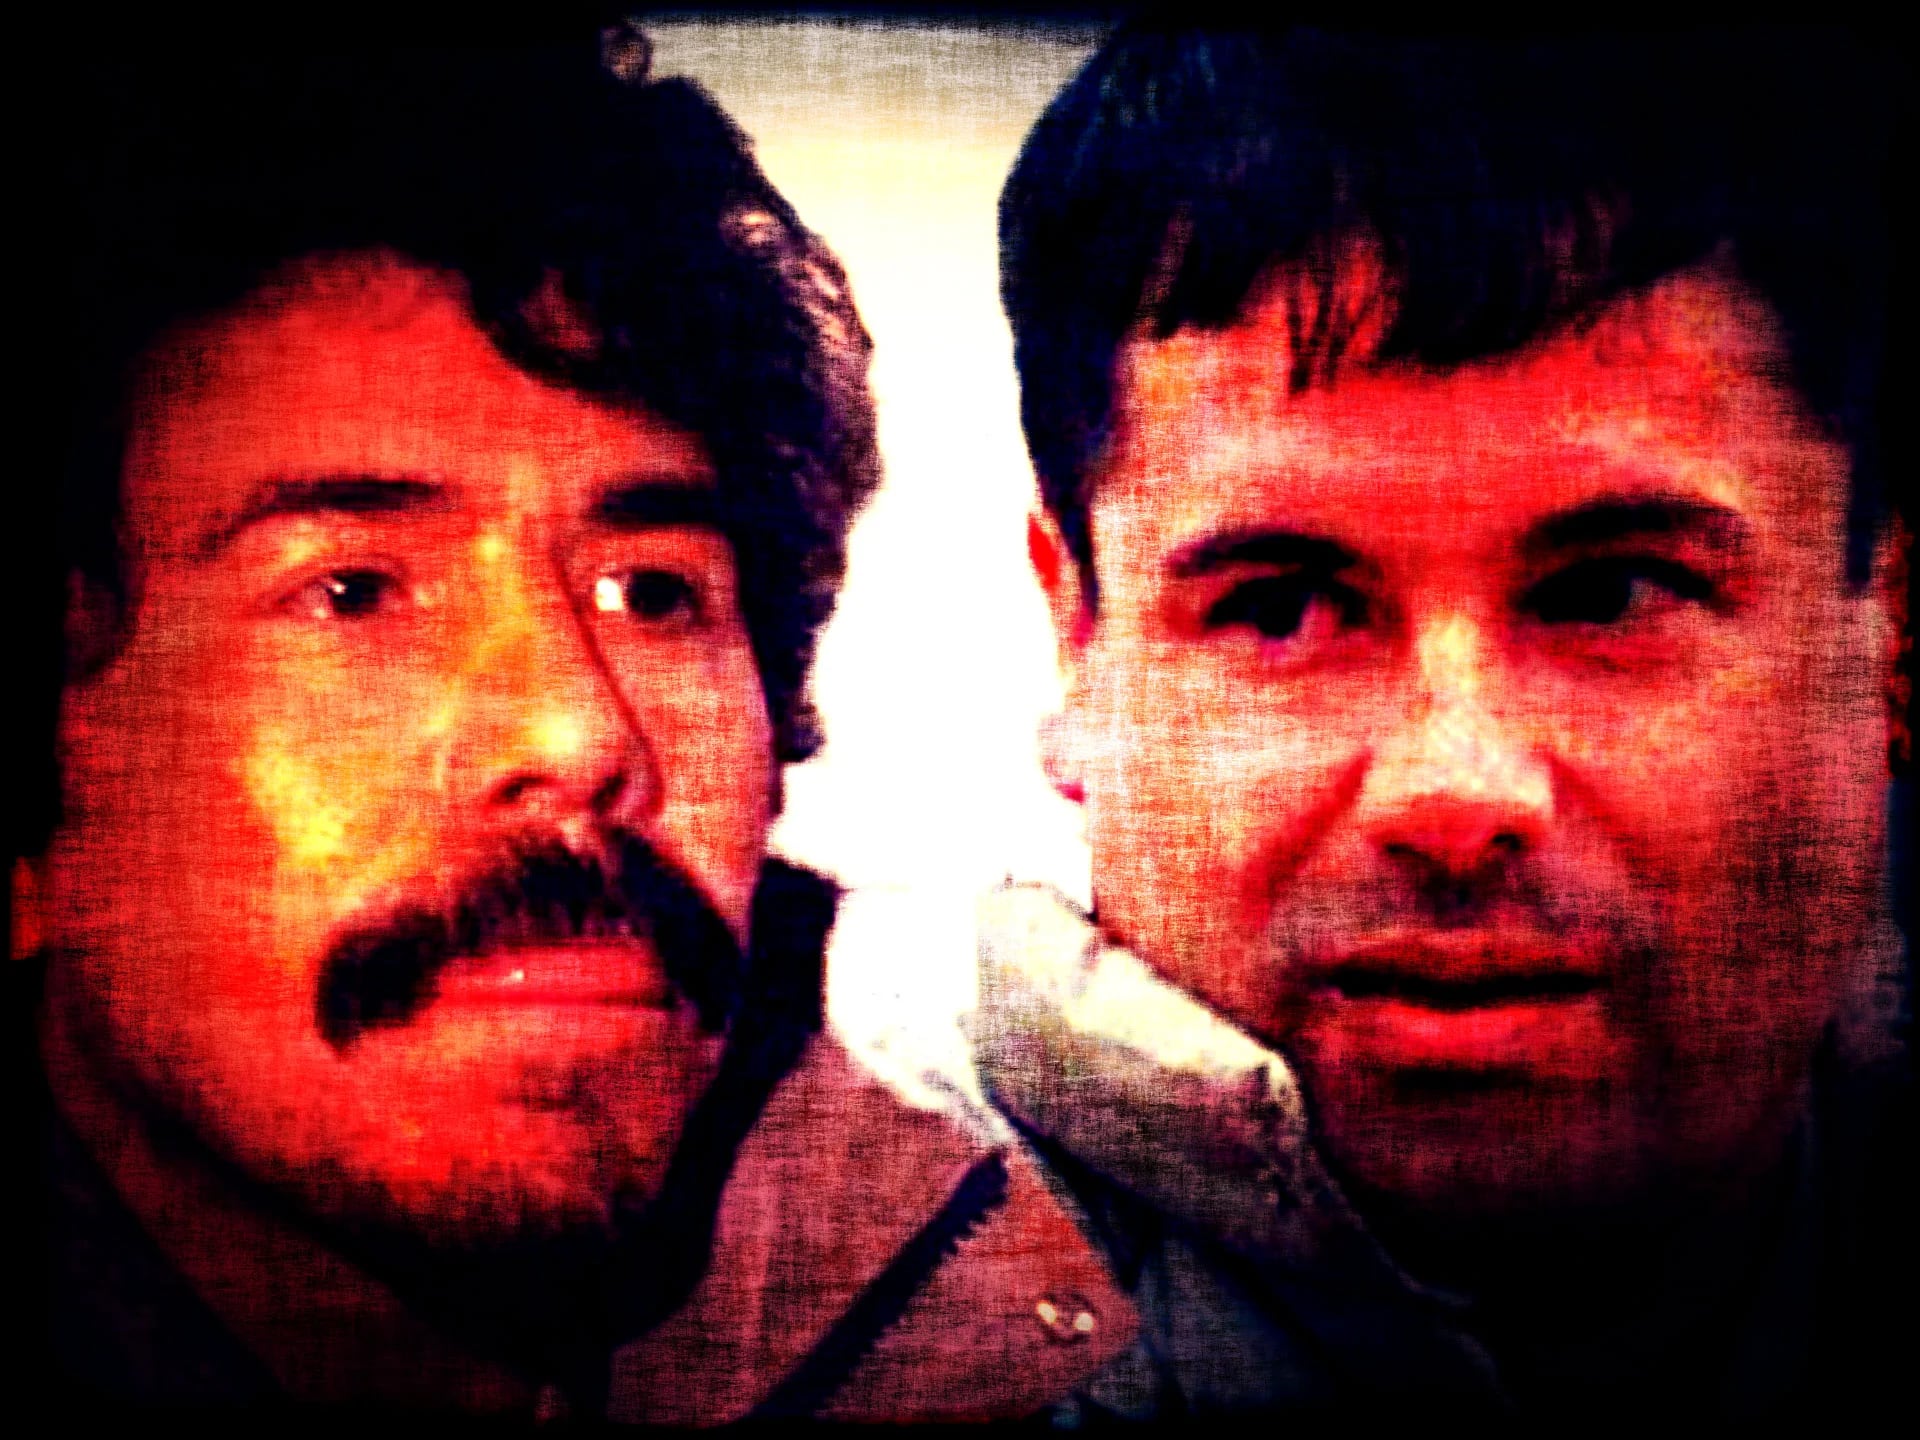 Caro Quintero aseguró que desde niño fue amigo de su “colega” narco Joaquín “El Chapo” Guzmán